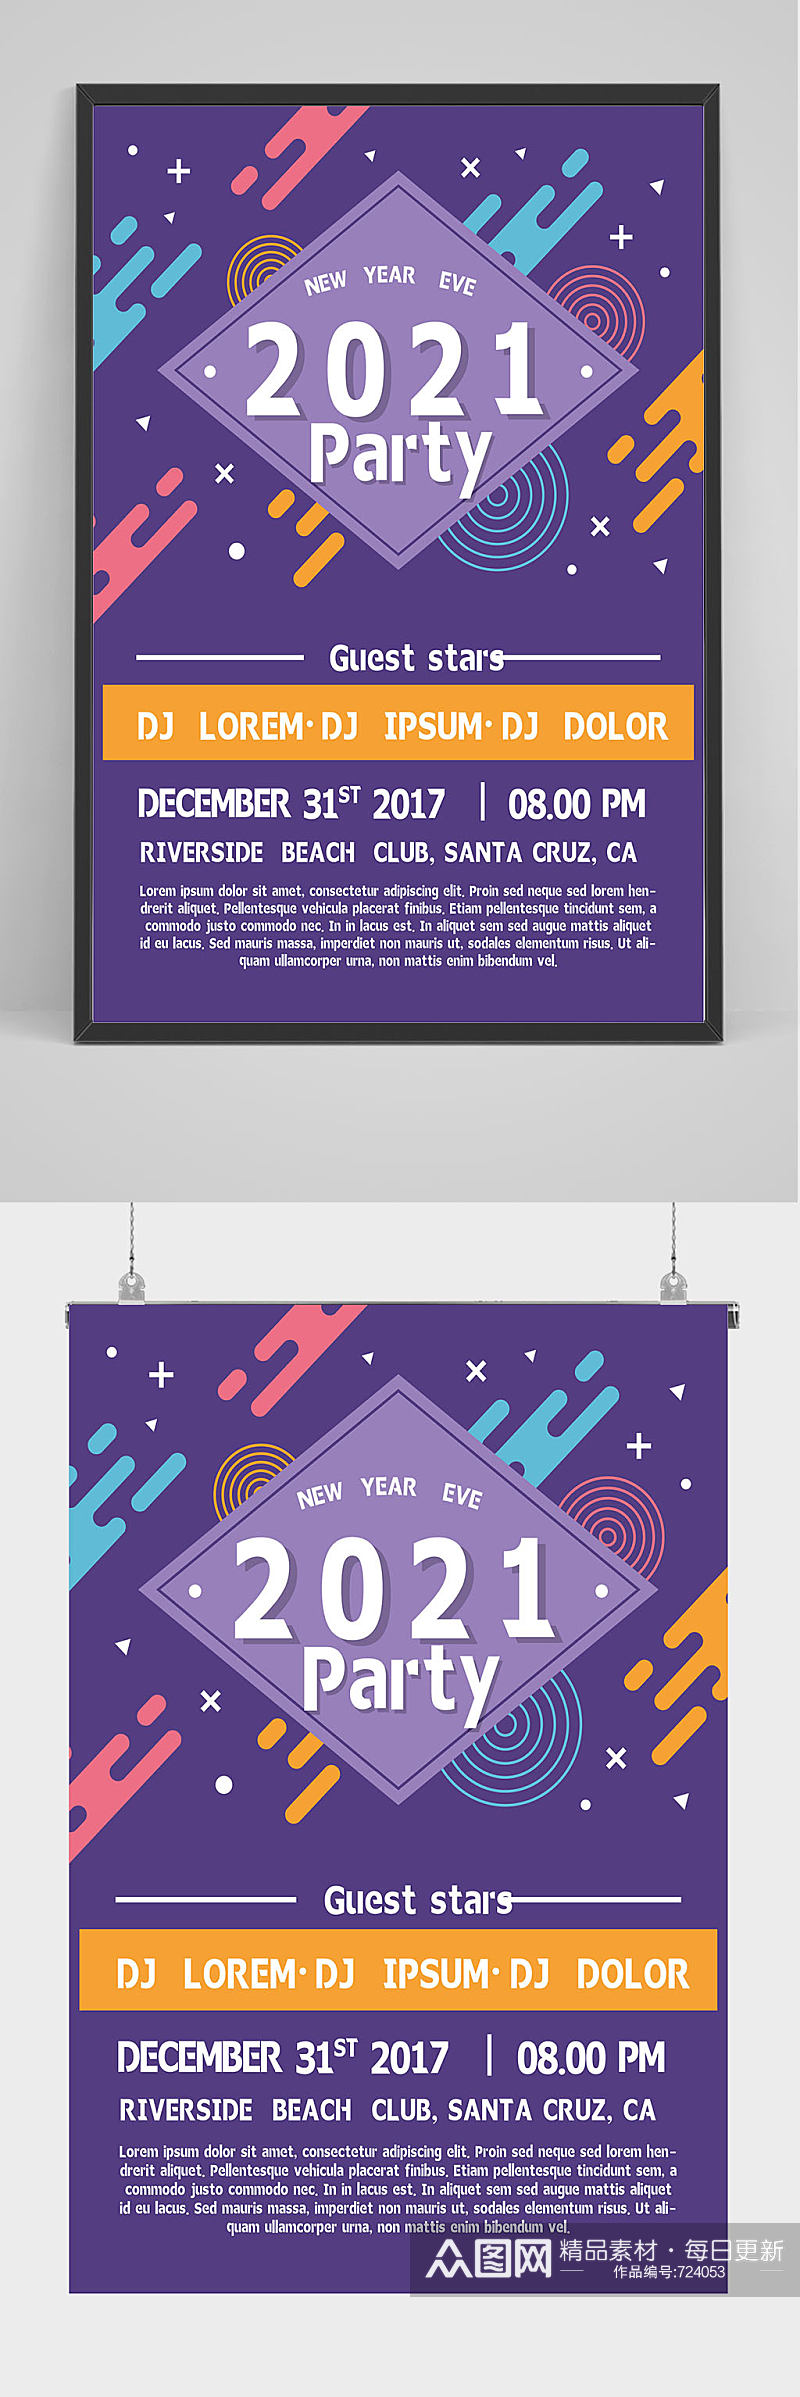 精品创意2021年新年派对海报设计素材